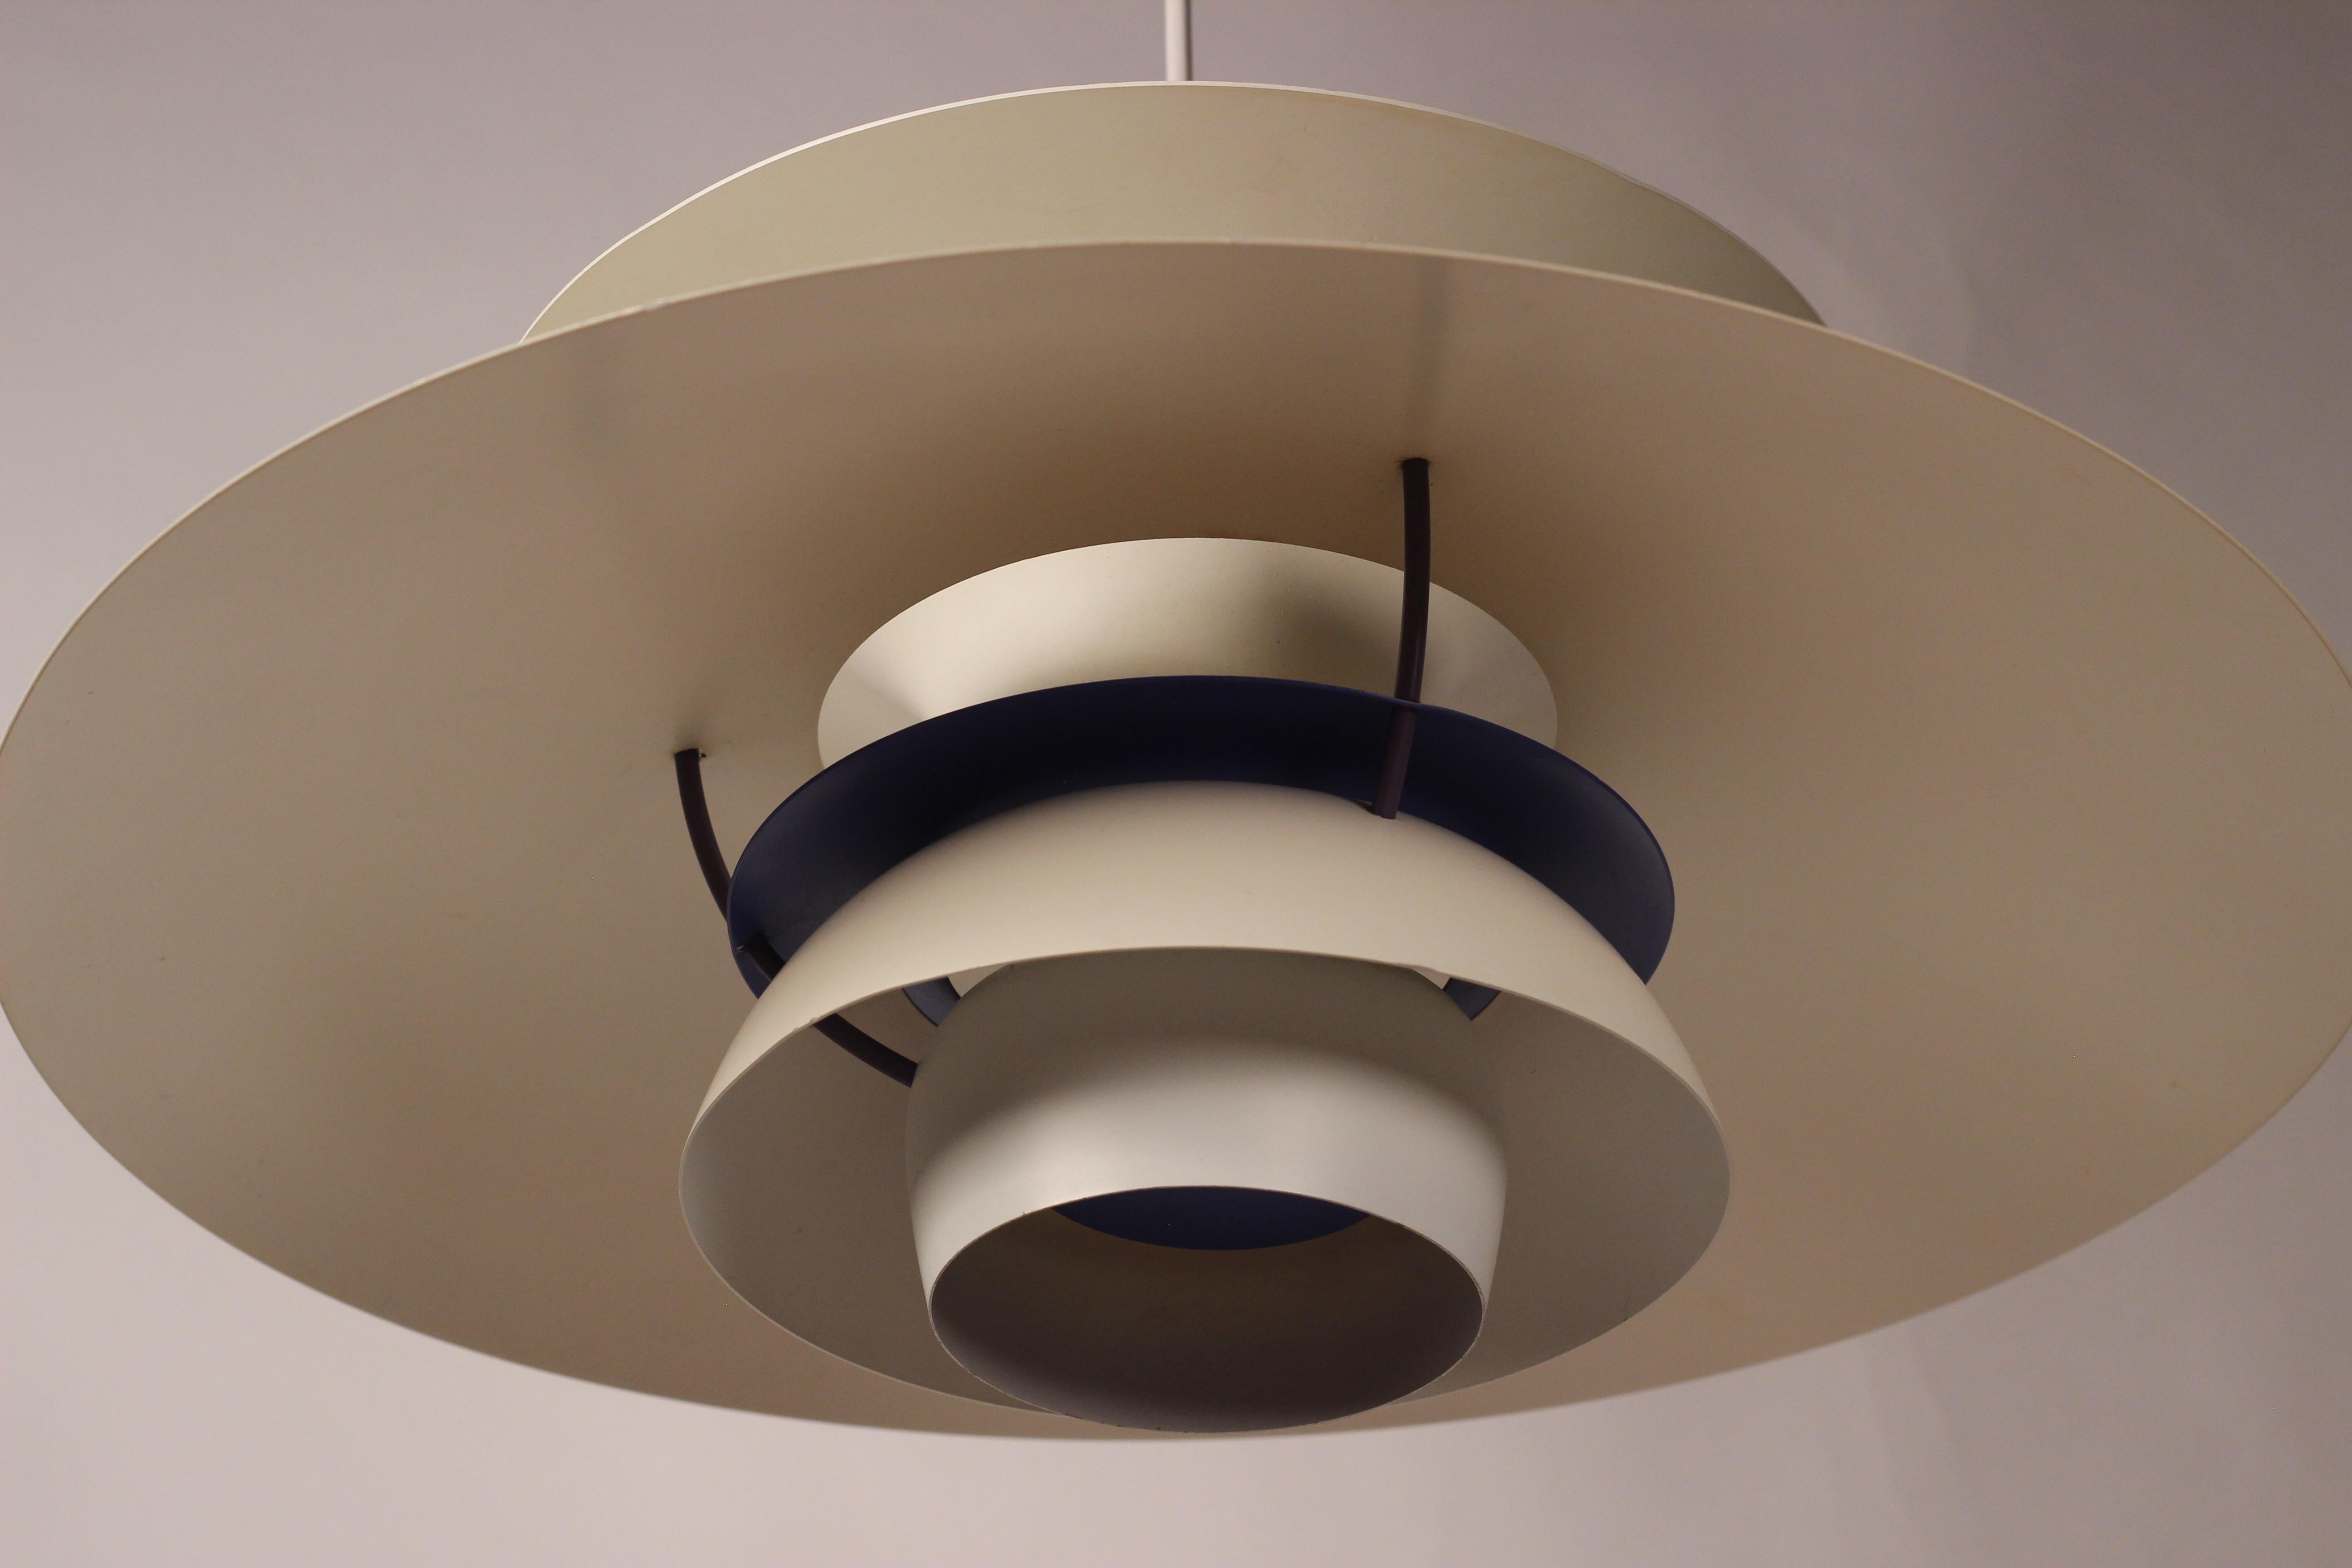 Danish Scandinavian Modern PH5 Pendant Ceiling Light Designed by Poul Henningsen 1960’s